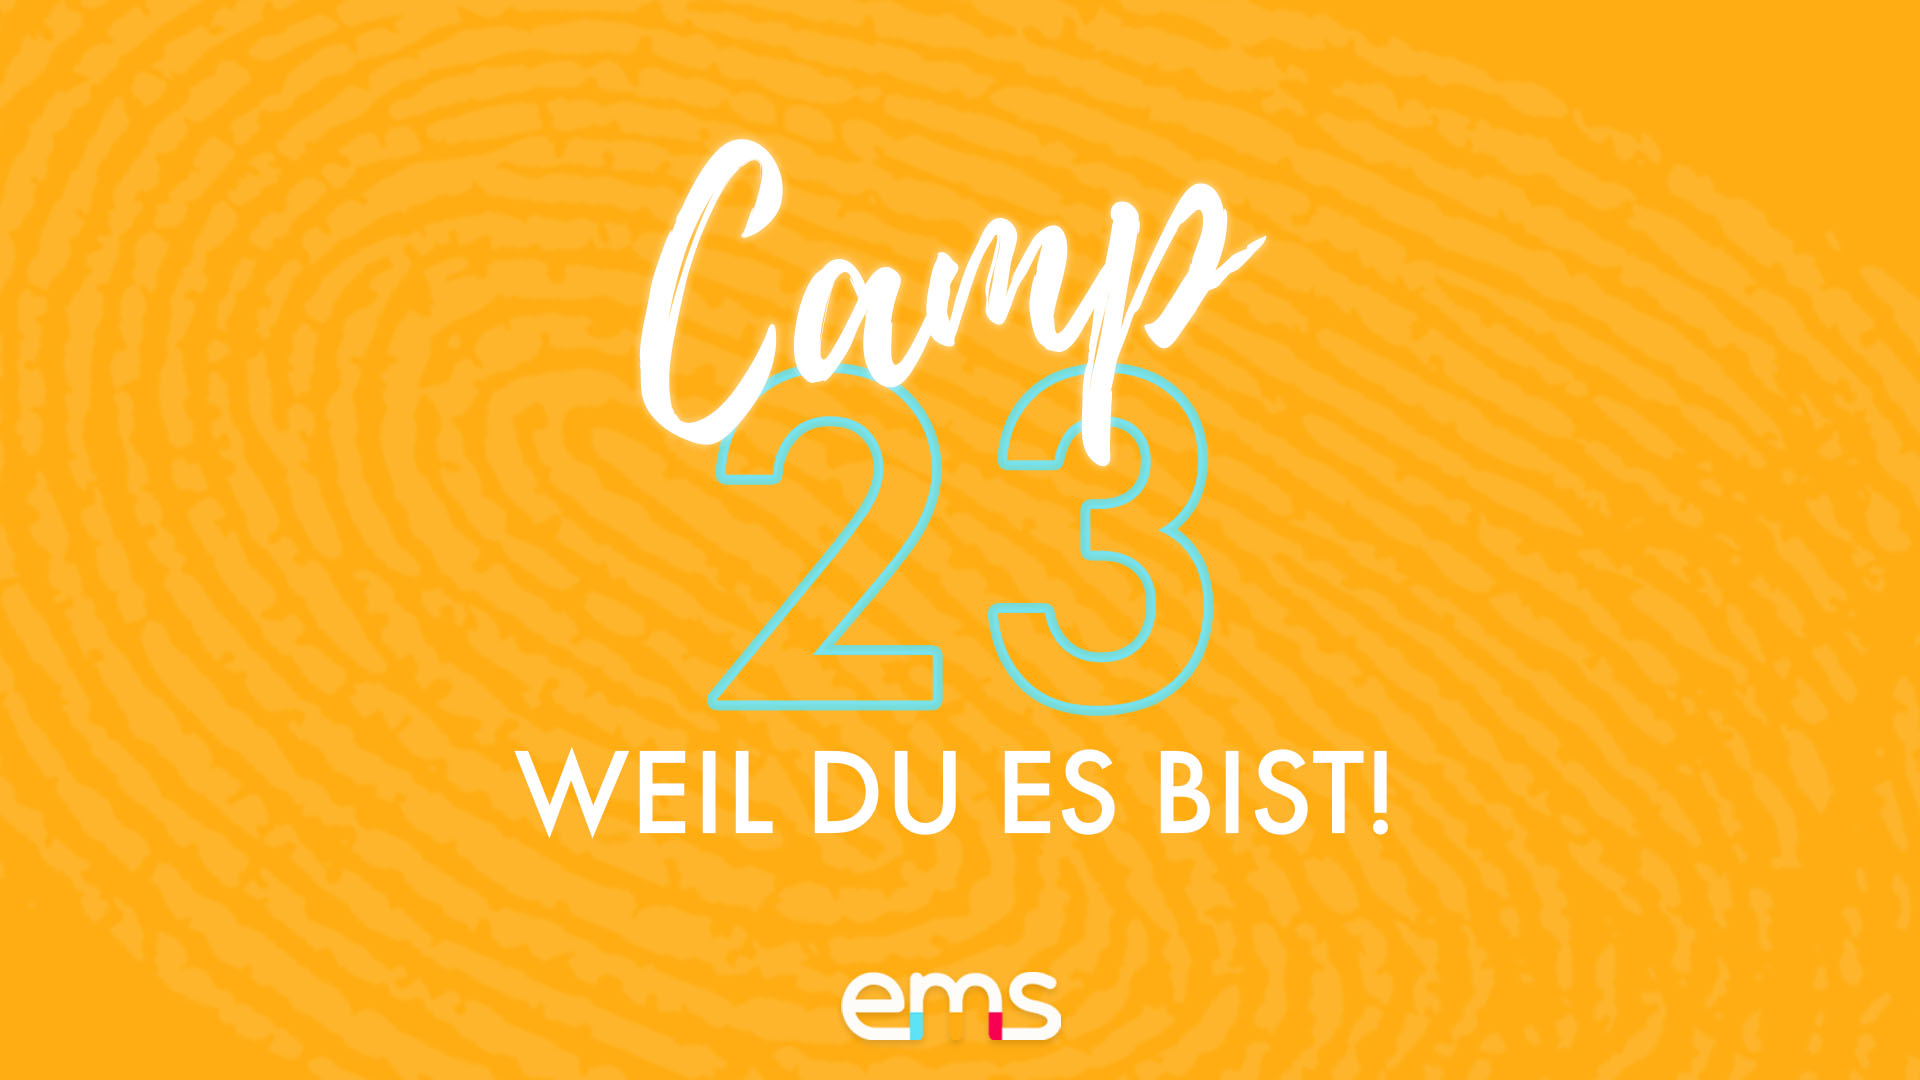 Camp 23 – ein Trainingslager für Journalismustalente